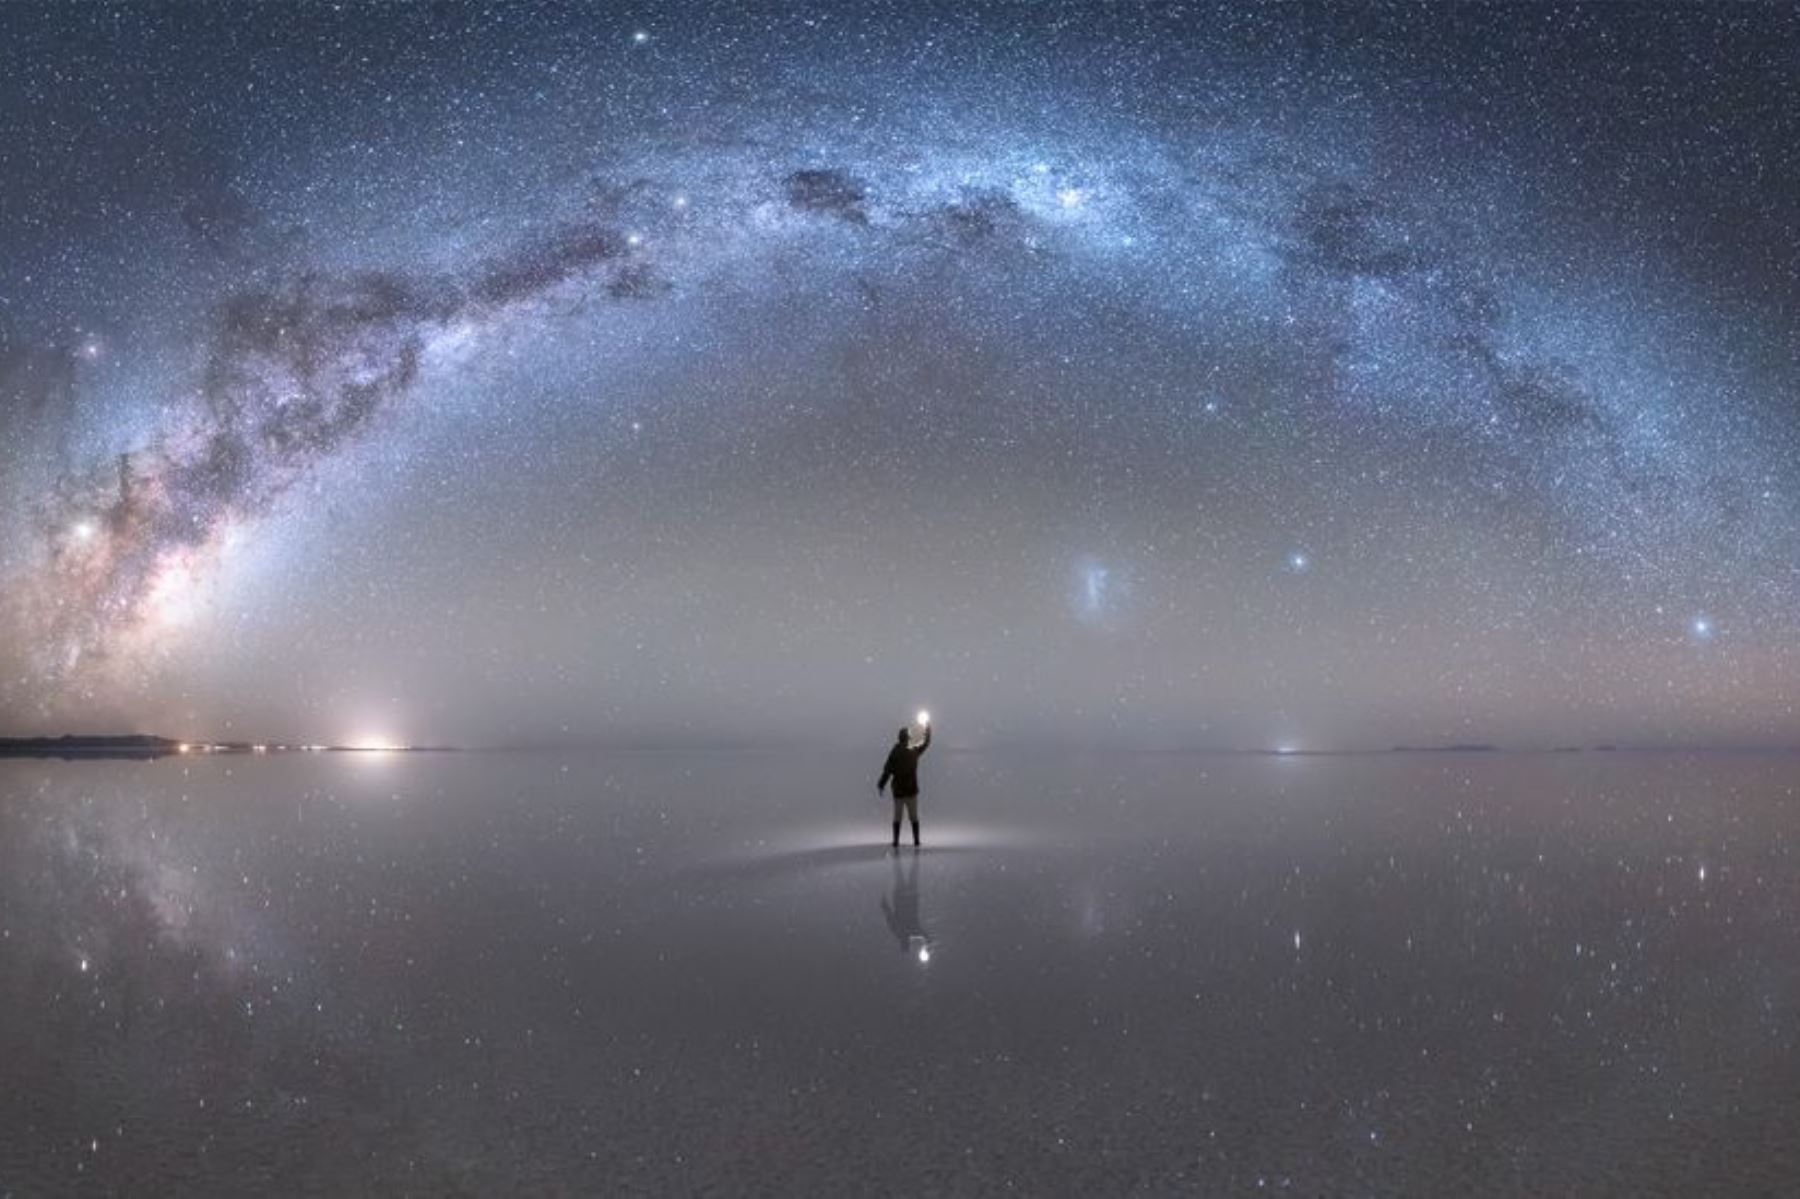 BBC Mundo resalta la historia de la espectacular imagen de la Vía Láctea tomada por fotógrafo peruano Jheison Huerta en el salar de Uyuni y que fue premiada por la NASA. Foto: Jheison Huerta